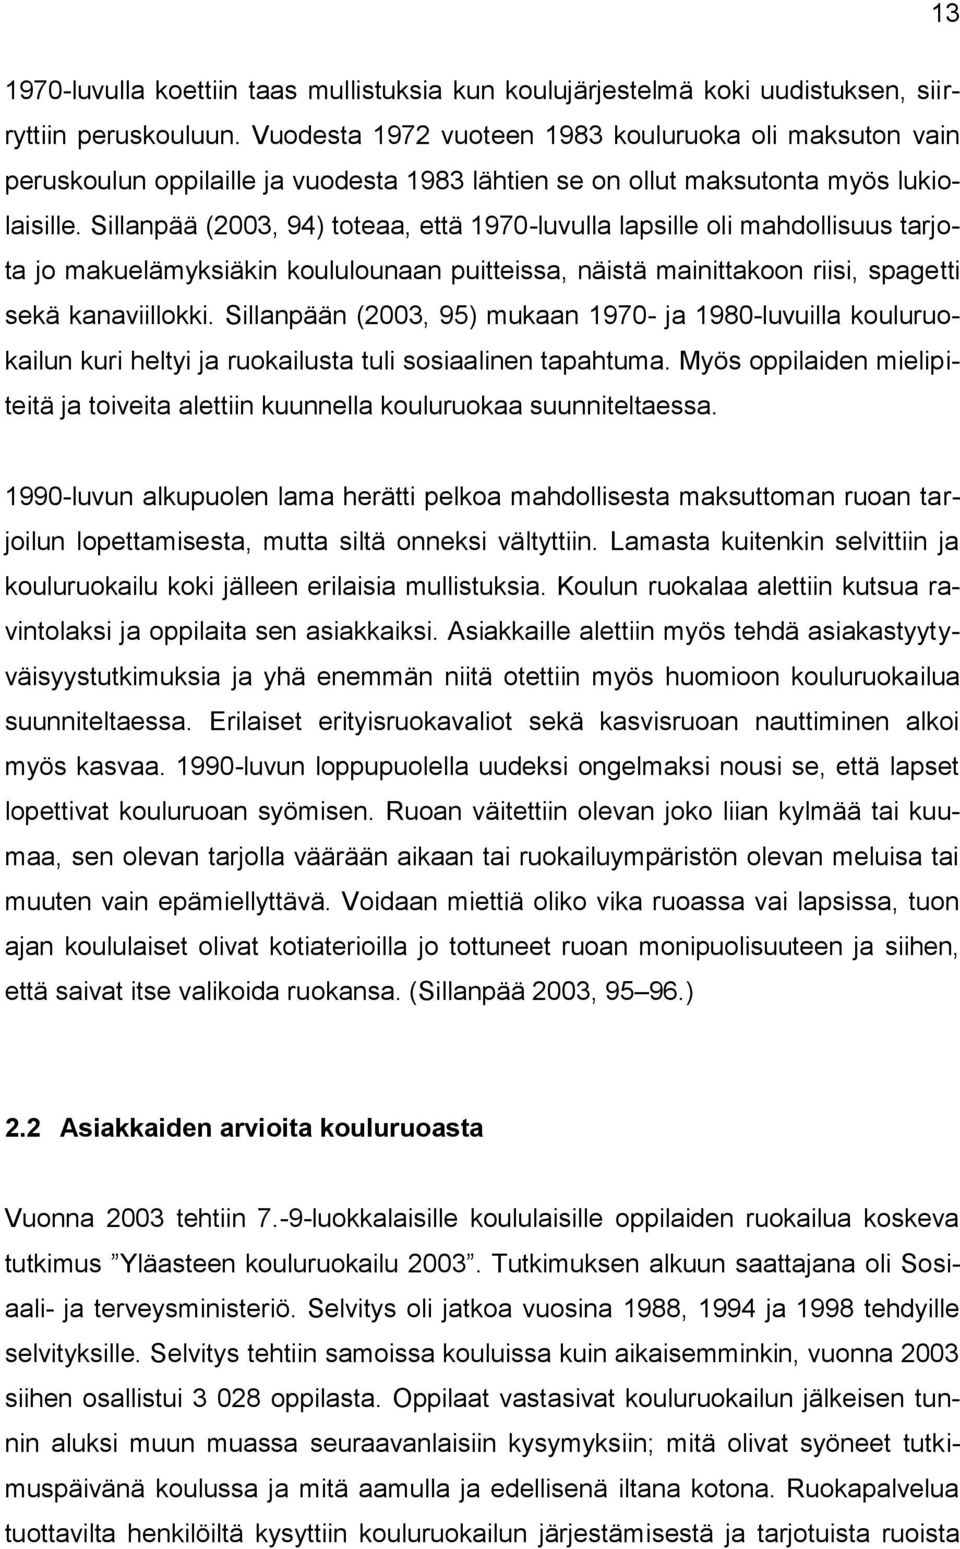 Sillanpää (2003, 94) toteaa, että 1970-luvulla lapsille oli mahdollisuus tarjota jo makuelämyksiäkin koululounaan puitteissa, näistä mainittakoon riisi, spagetti sekä kanaviillokki.